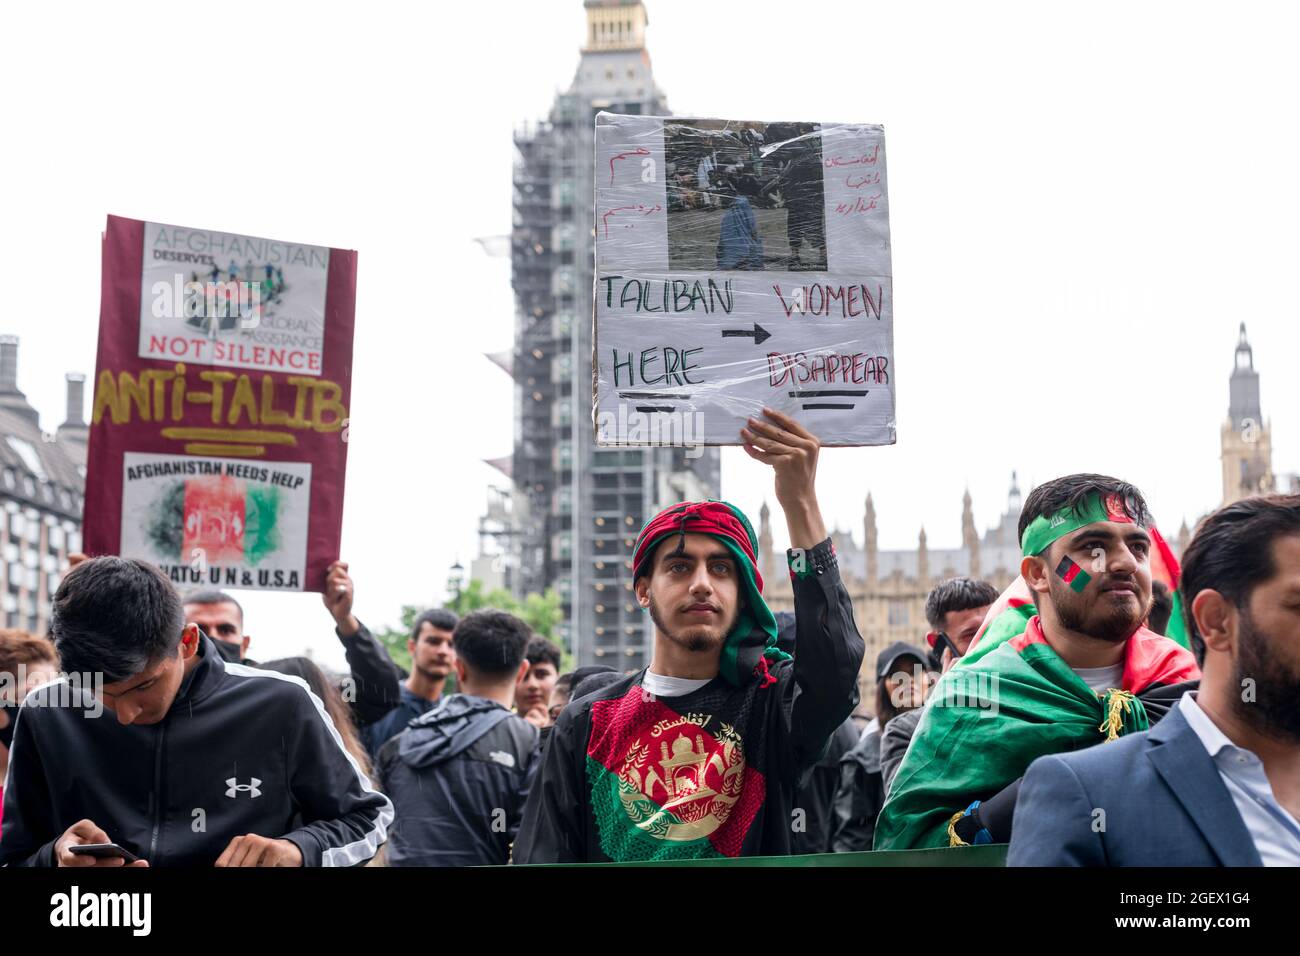 Londres, Reino Unido. 21st de agosto de 2021. Un manifestante sostiene una pancarta que dice que los talibanes aquí, las mujeres desaparecen durante la manifestación.Tras la reciente toma de Kabul, la capital de Afganistán, por los talibanes, grupos activistas, entre ellos Stop the War UK e intérpretes/traductores afganos en Londres se reunieron fuera de la Plaza del Parlamento para expresar su solidaridad con los afganos. Pedían una acción urgente por parte del gobierno de Boris Johnson para proteger a los miembros de la familia cuyas vidas están amenazadas, específicamente para arrojar luz sobre los derechos de las mujeres y los niños. Crédito: SOPA Images Limited/Alamy Live News Foto de stock